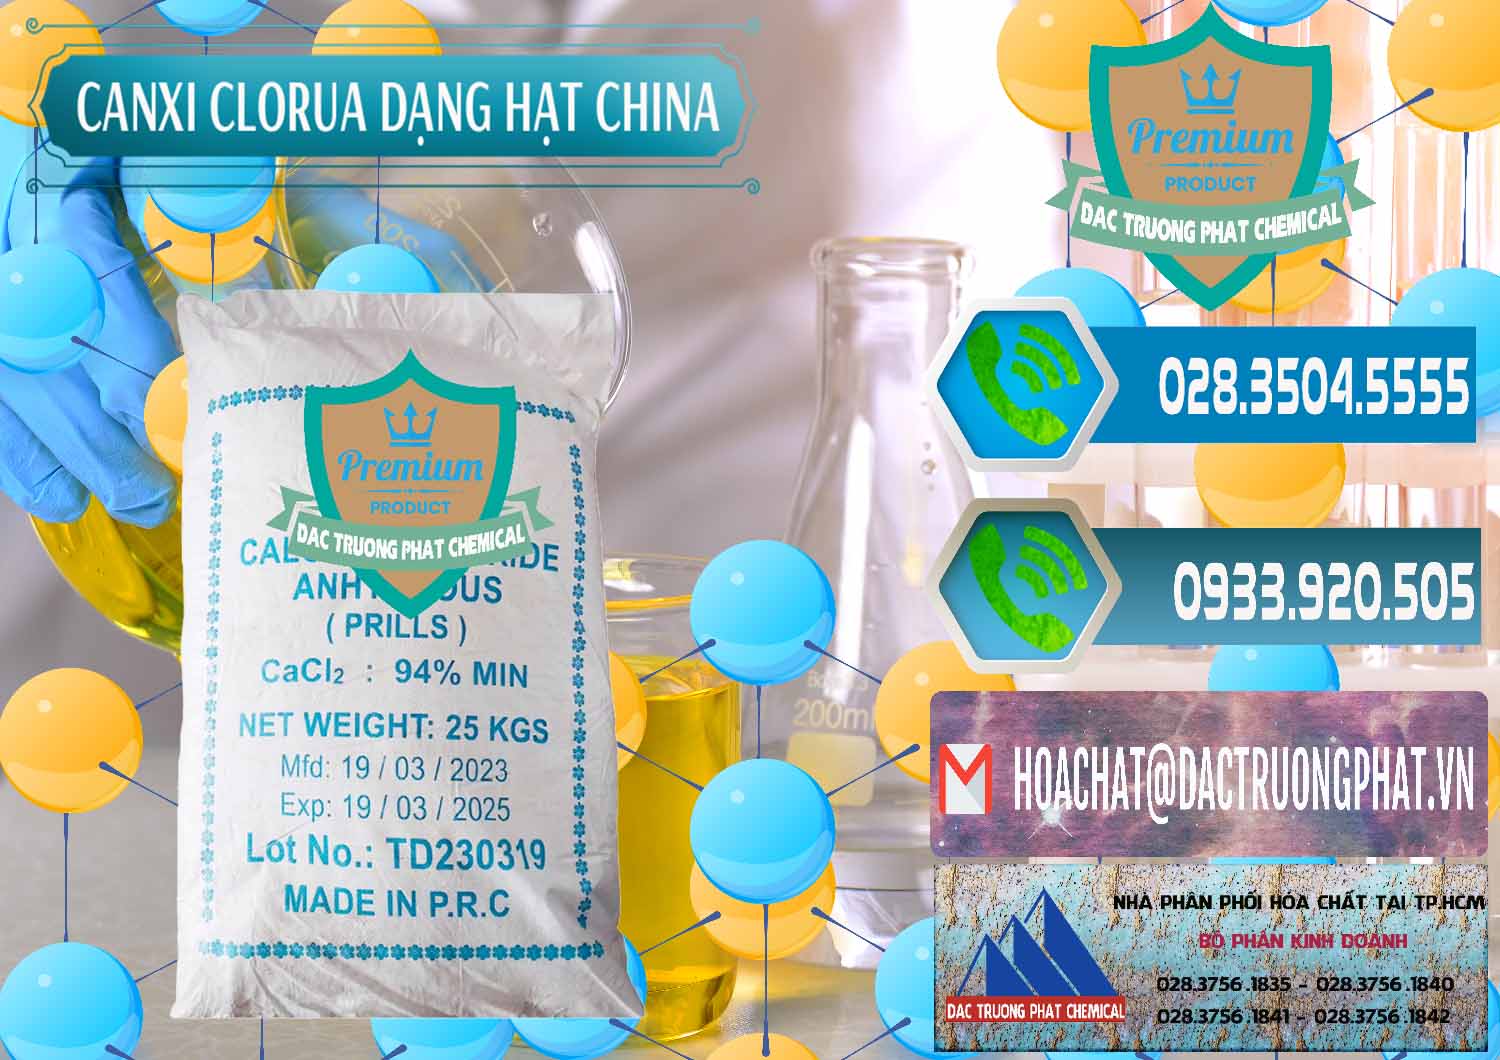 Đơn vị chuyên phân phối và bán CaCl2 – Canxi Clorua 94% Dạng Hạt Trung Quốc China - 0373 - Kinh doanh - cung cấp hóa chất tại TP.HCM - congtyhoachat.net